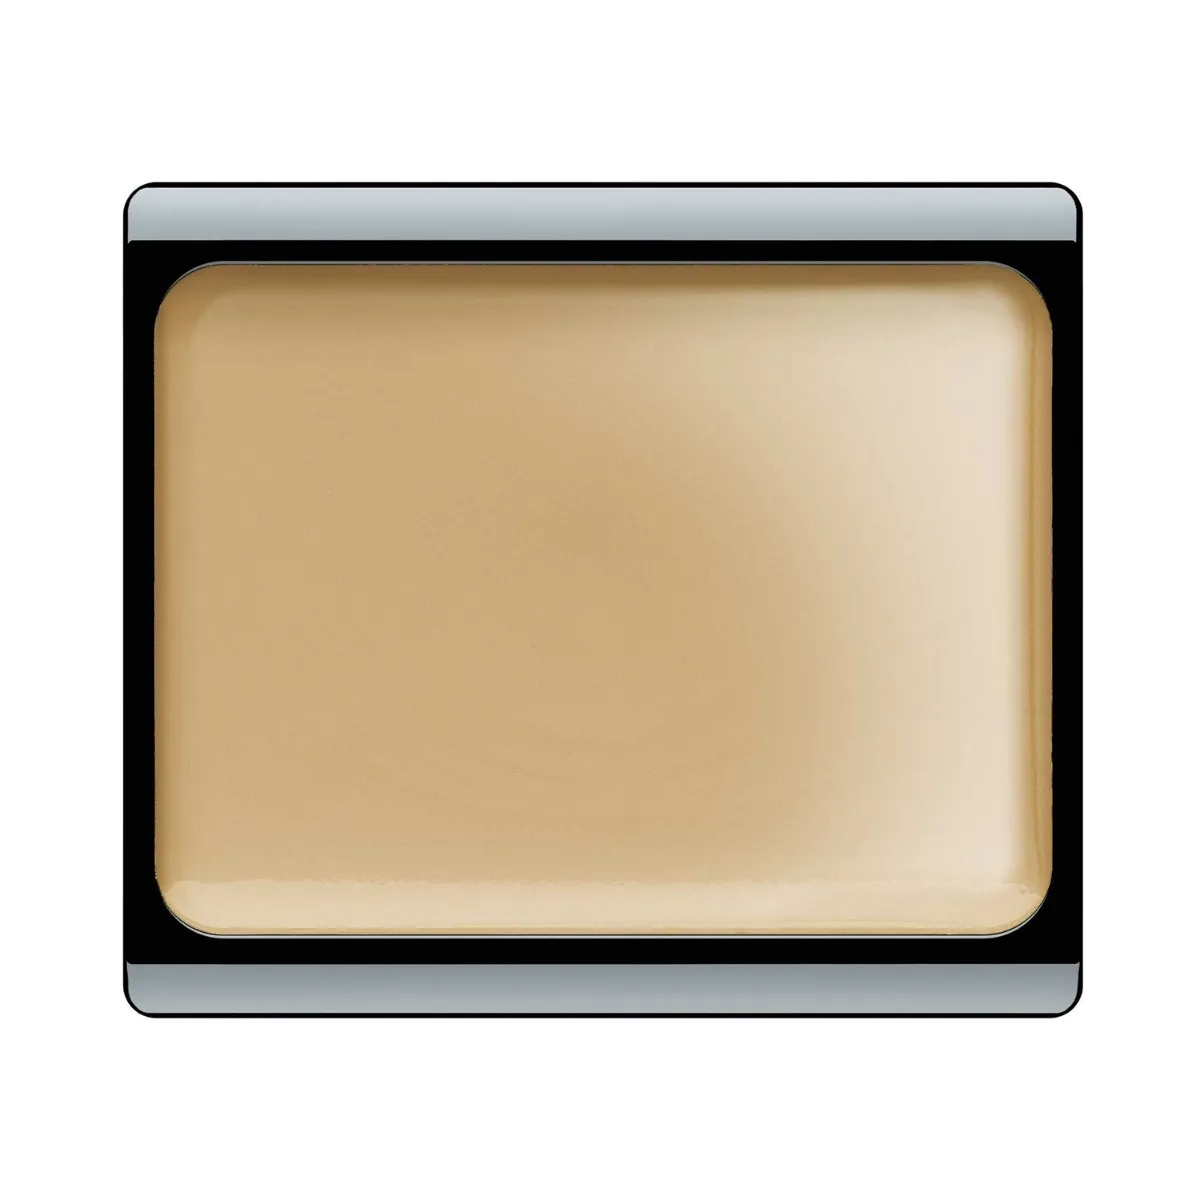 ARTDECO Camuflage Cream pełnokryjący podkład w kremie, 06 – Desert Sand, 4,5 g